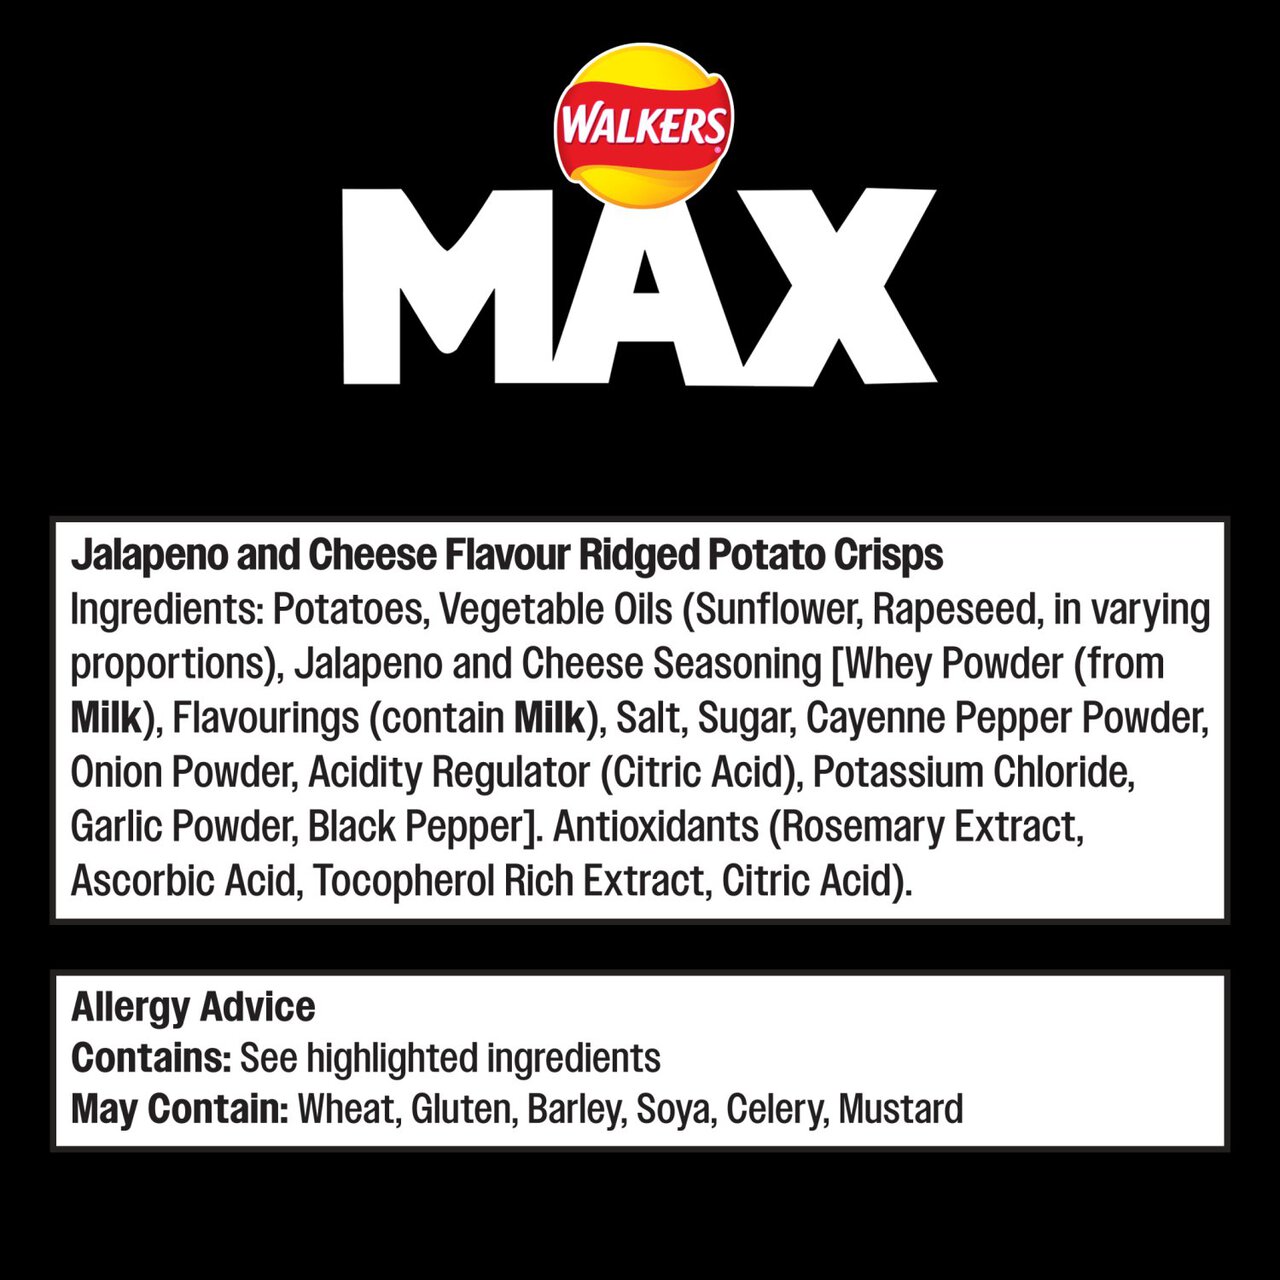 Walkers Max Strong Jalapeno & Cheese Sharing Bag Crisps 140g